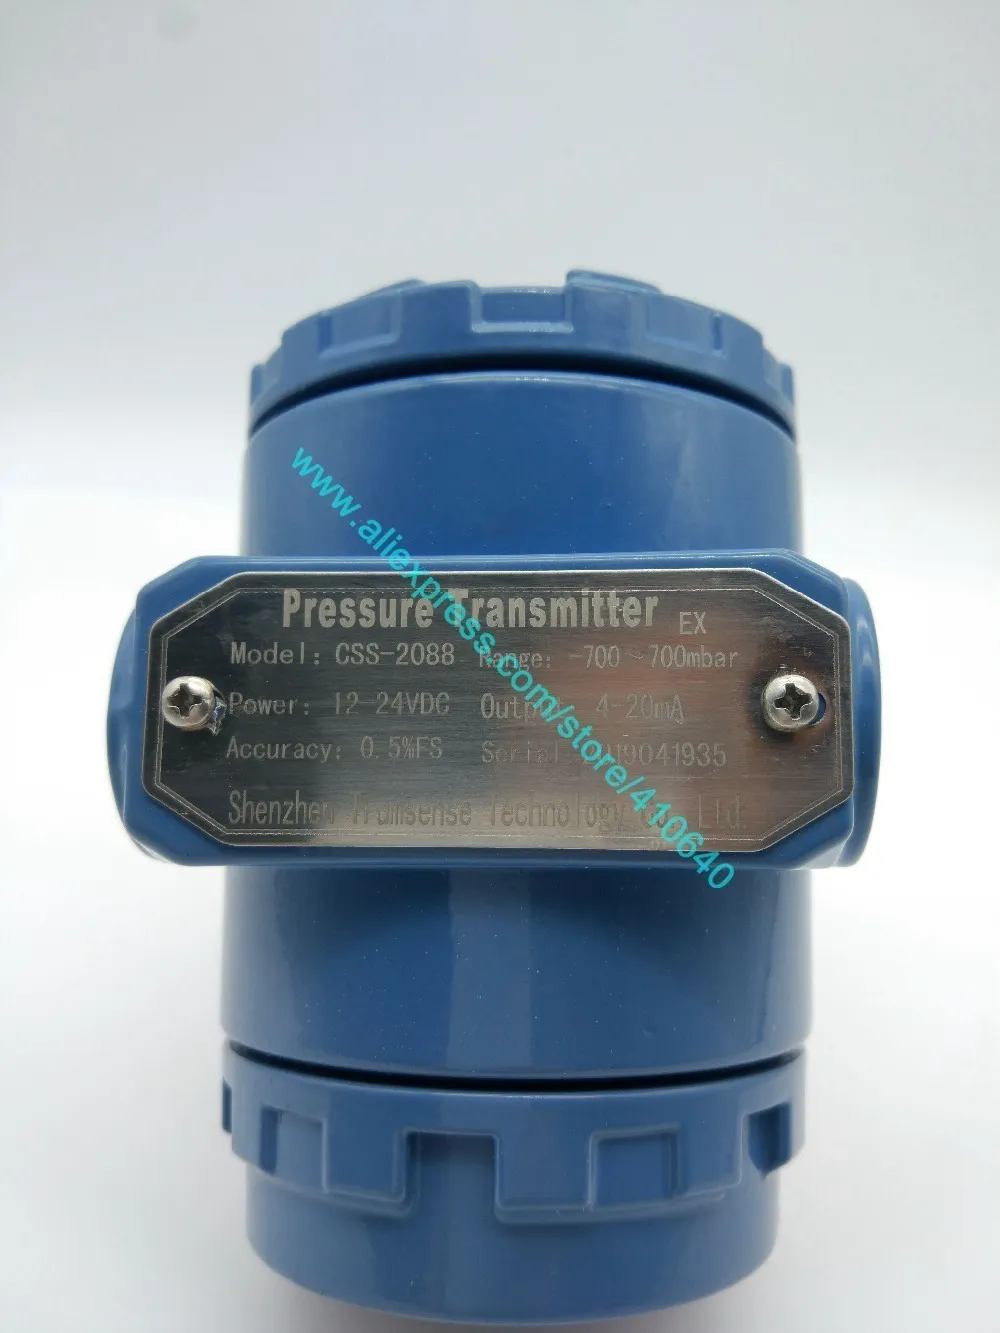 -700 to 700m bar Pressure transmitter (11)